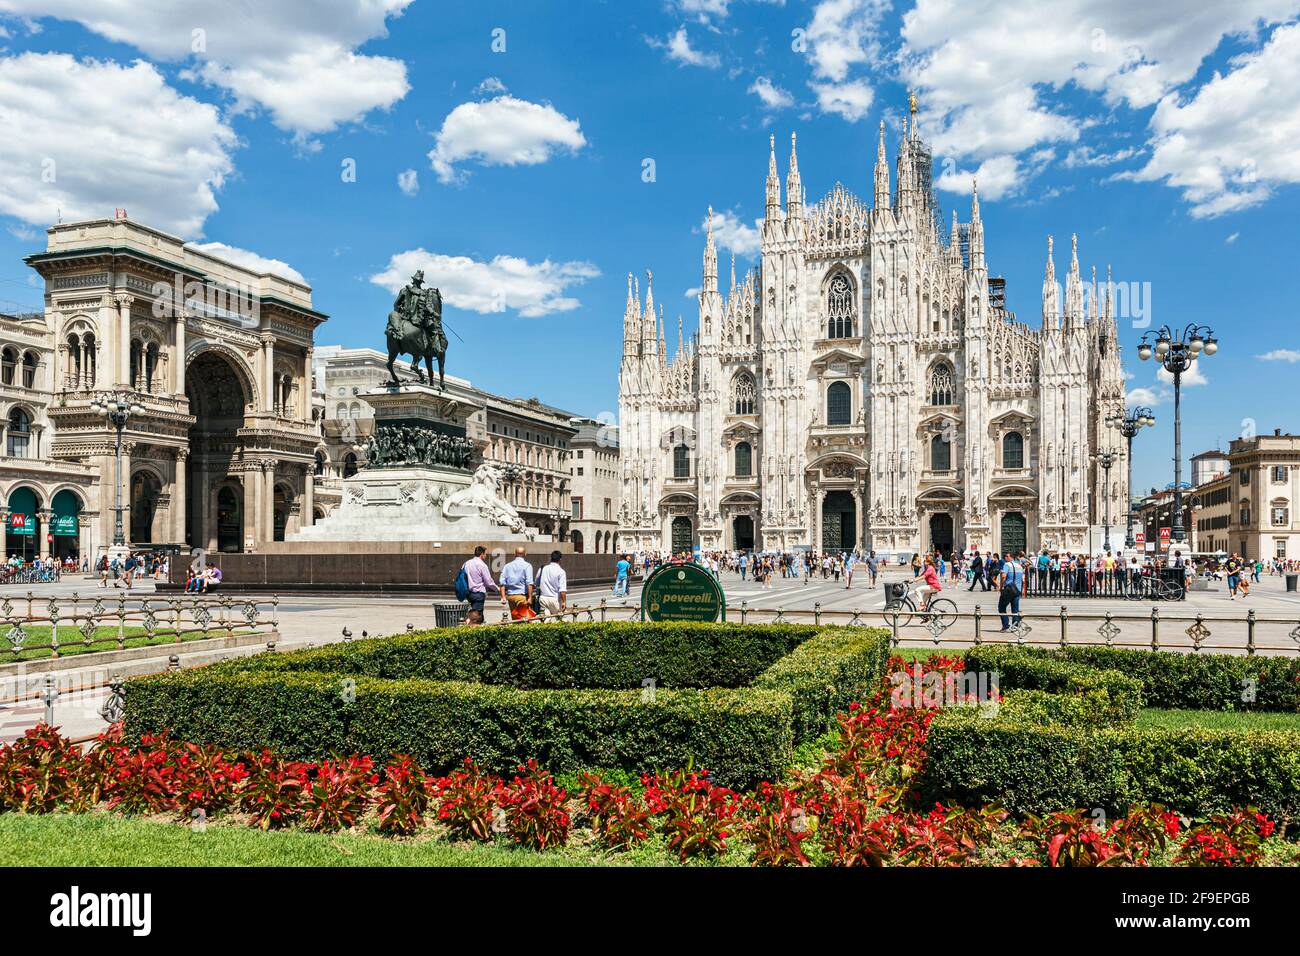 Milan, province de Milan, Lombardie, Italie. Le Duomo, ou cathédrale, sur la Piazza del Duomo. La galerie Vittorio Emanuele II se trouve à l'extrême gauche Banque D'Images